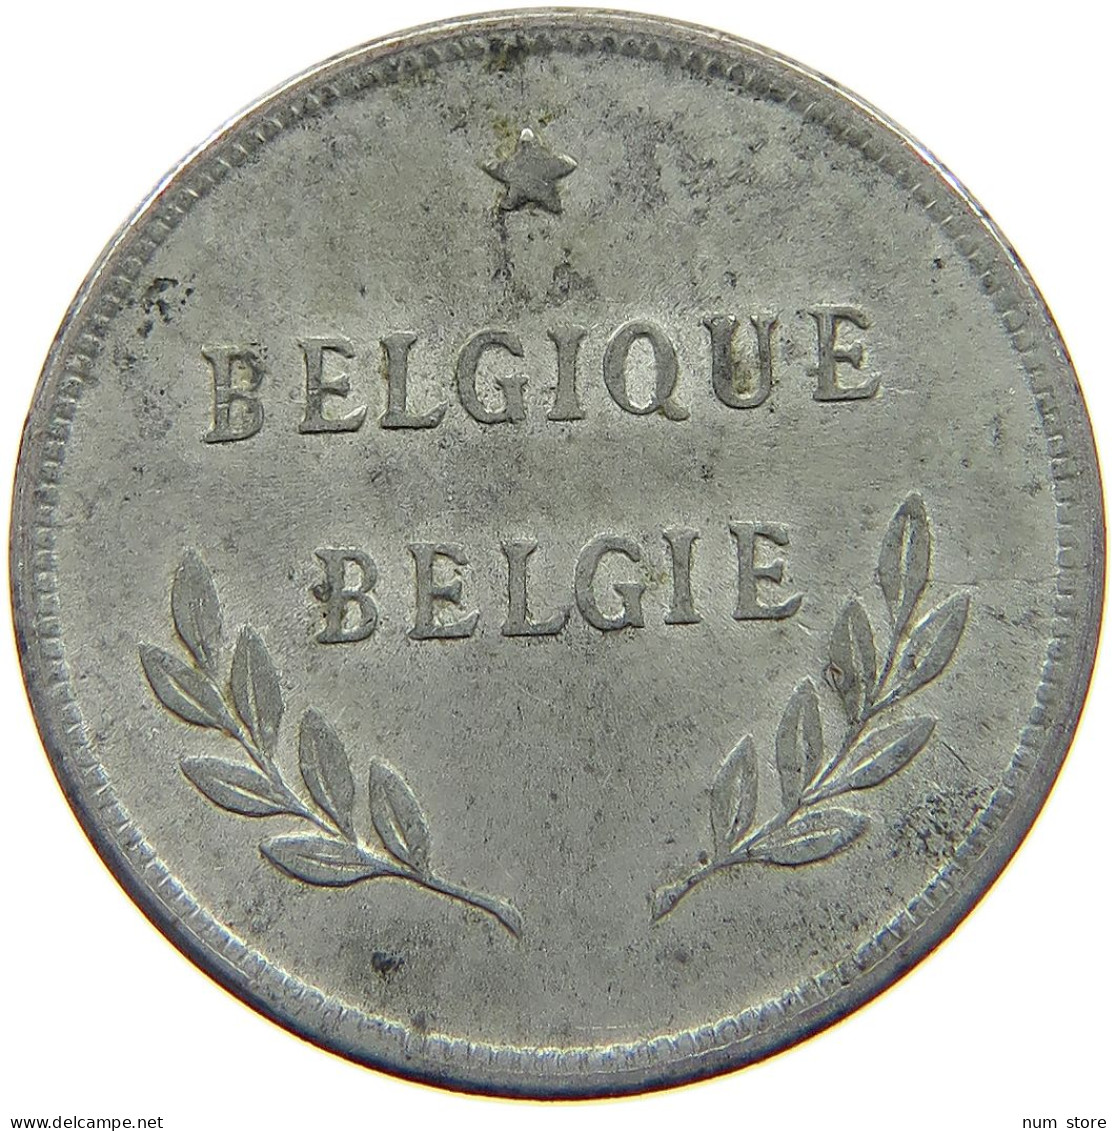 BELGIUM 2 FRANCS 1944 #c007 0279 - 2 Frank (1944 Bevrijding)